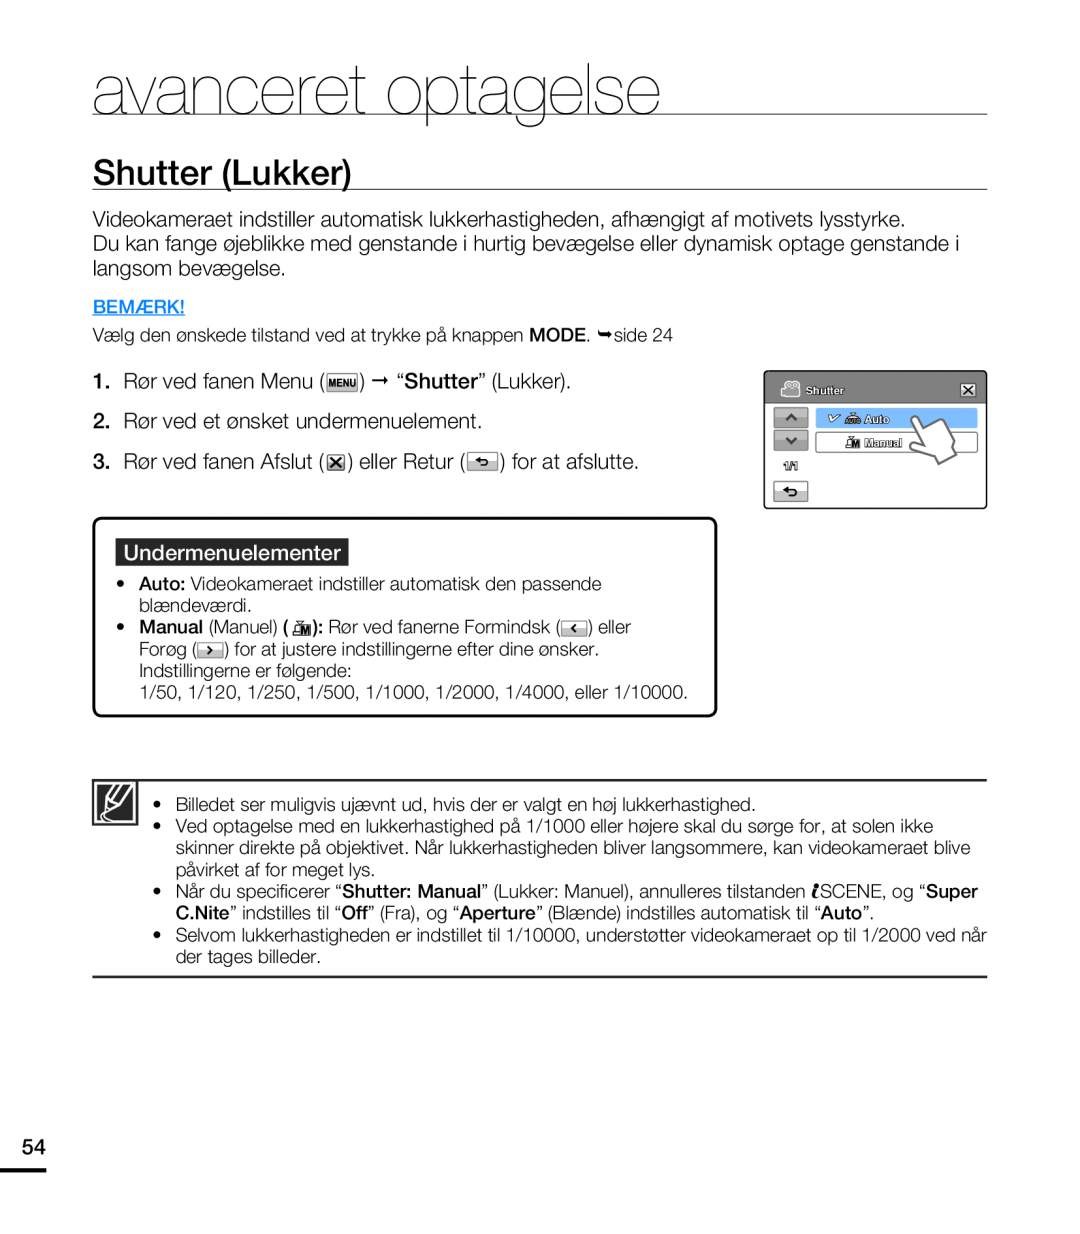 Samsung HMX-T10WP/EDC manual Shutter Lukker, avanceret optagelse, Undermenuelementer, Bemærk, Shutter Auto Manual 1/1 